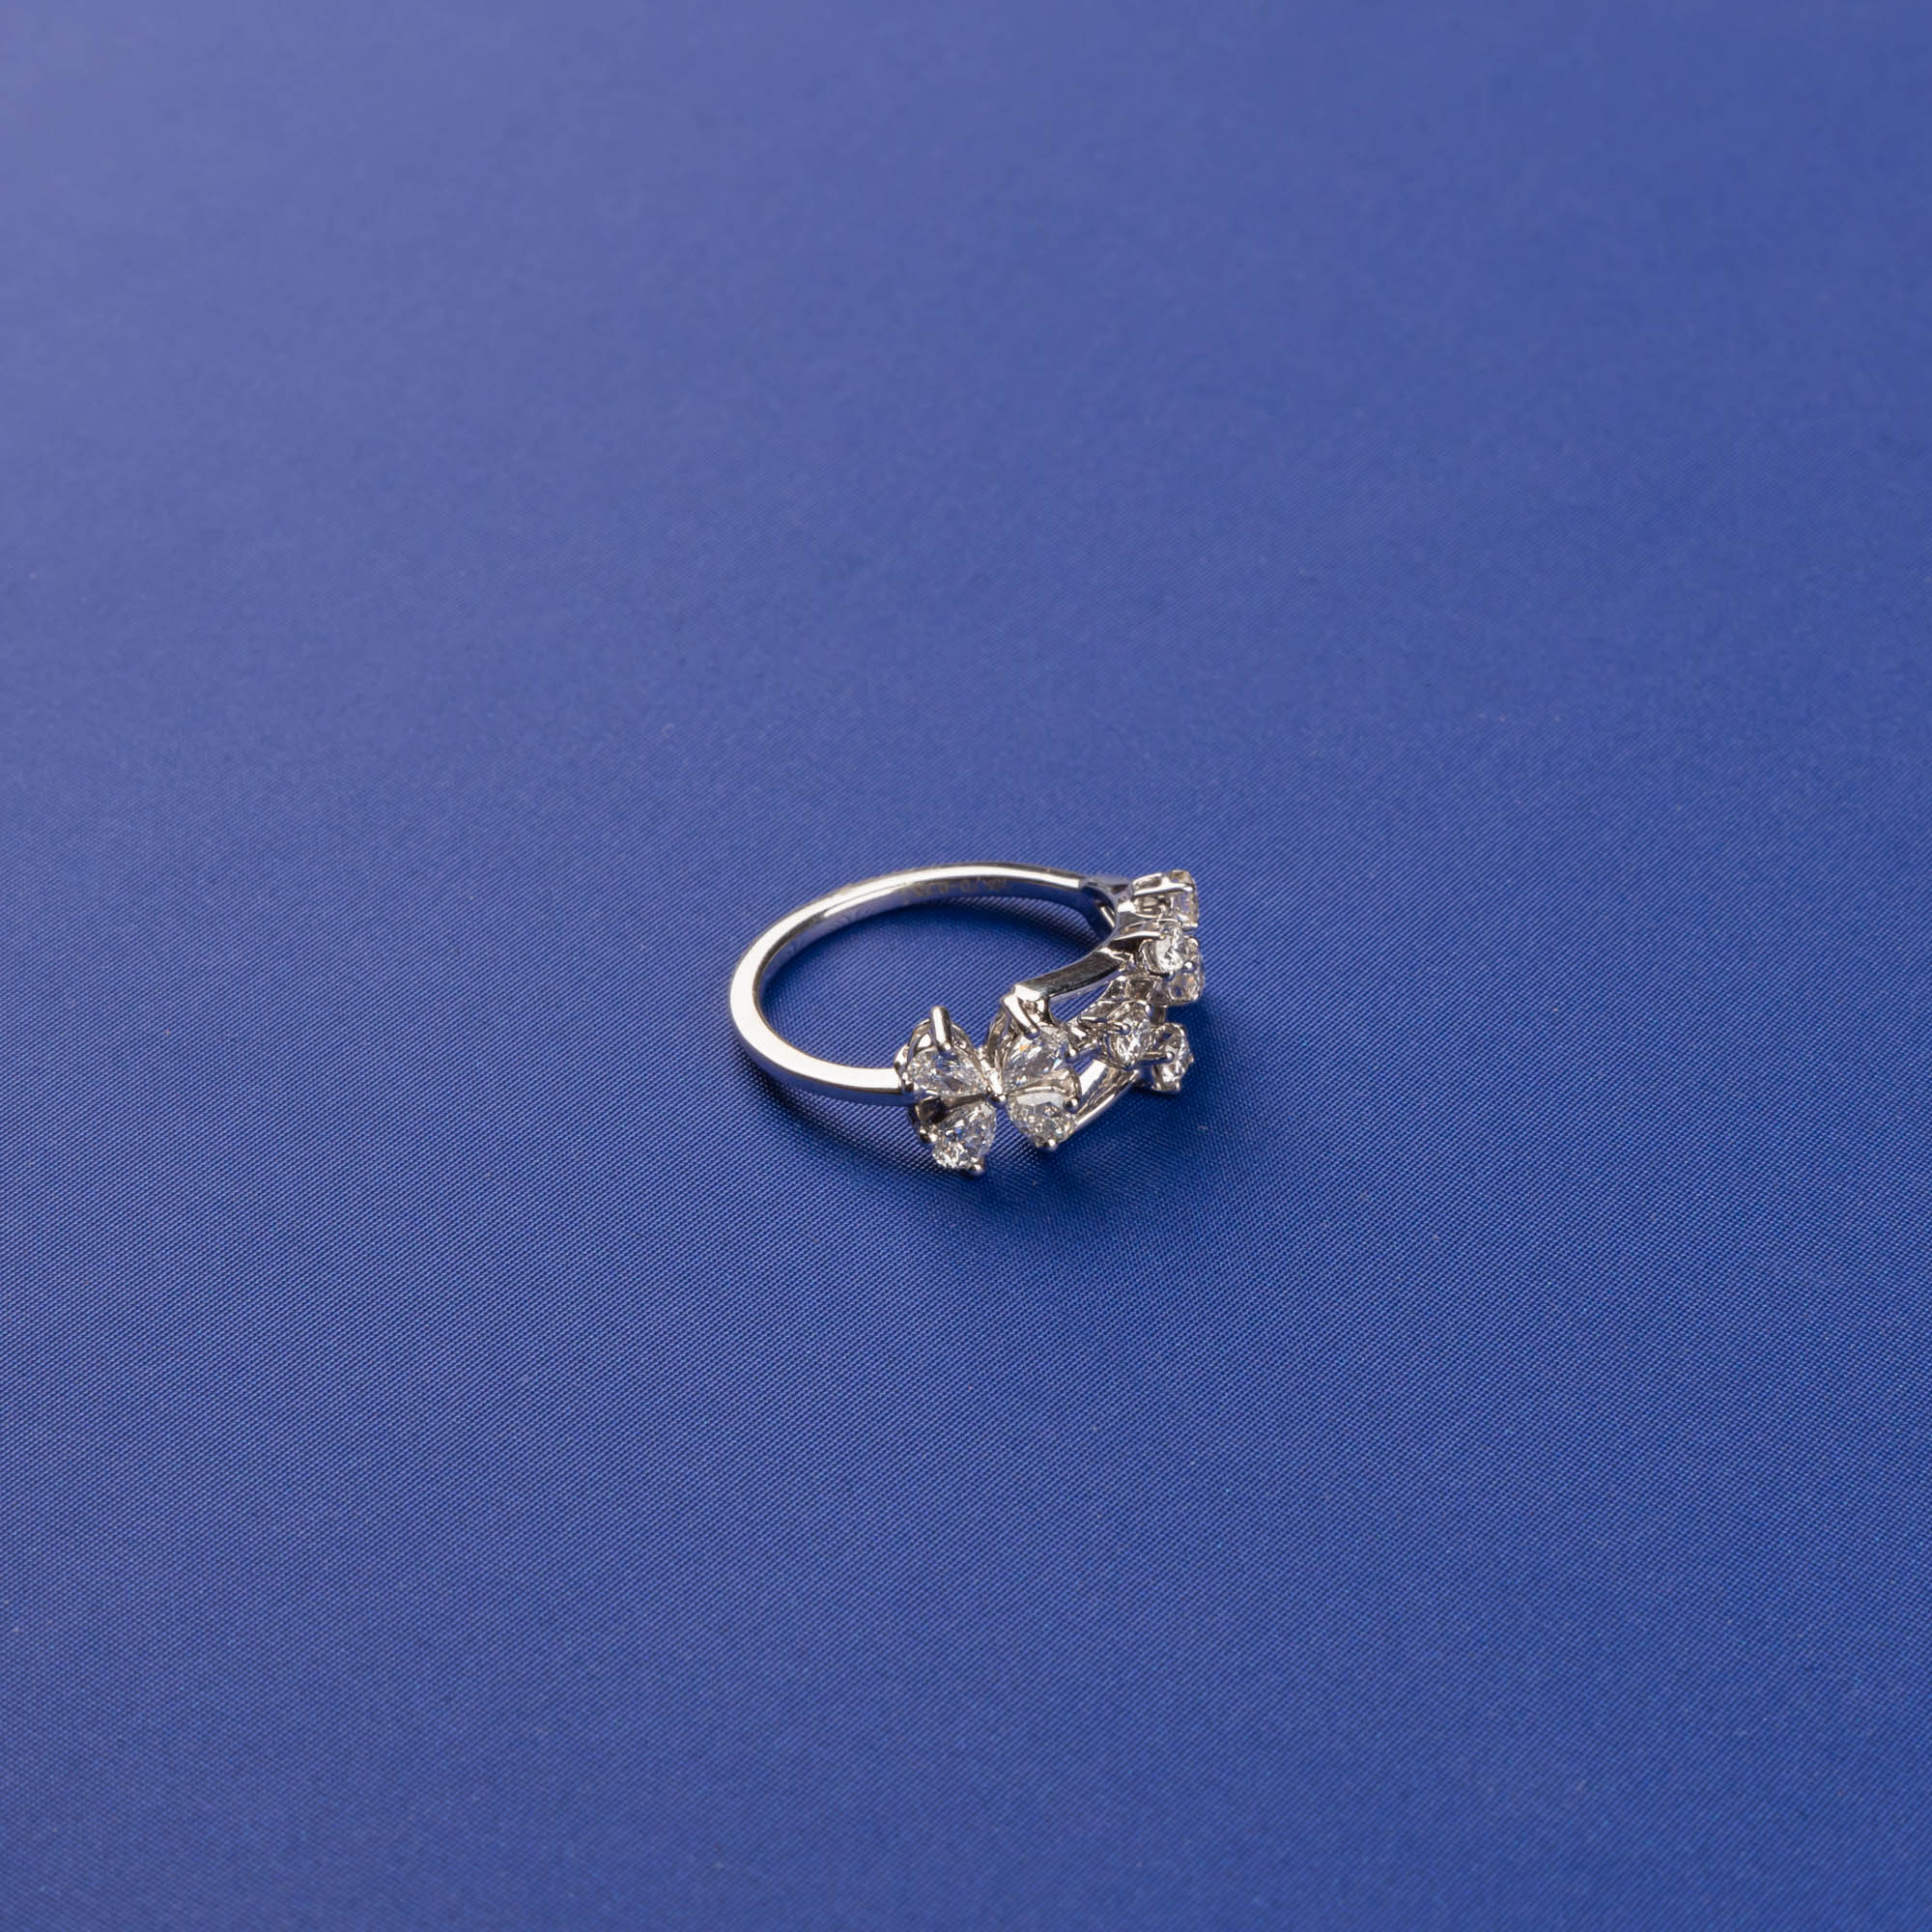 Whispers of Grace: Handmade 18K White Gold Diamond Ring